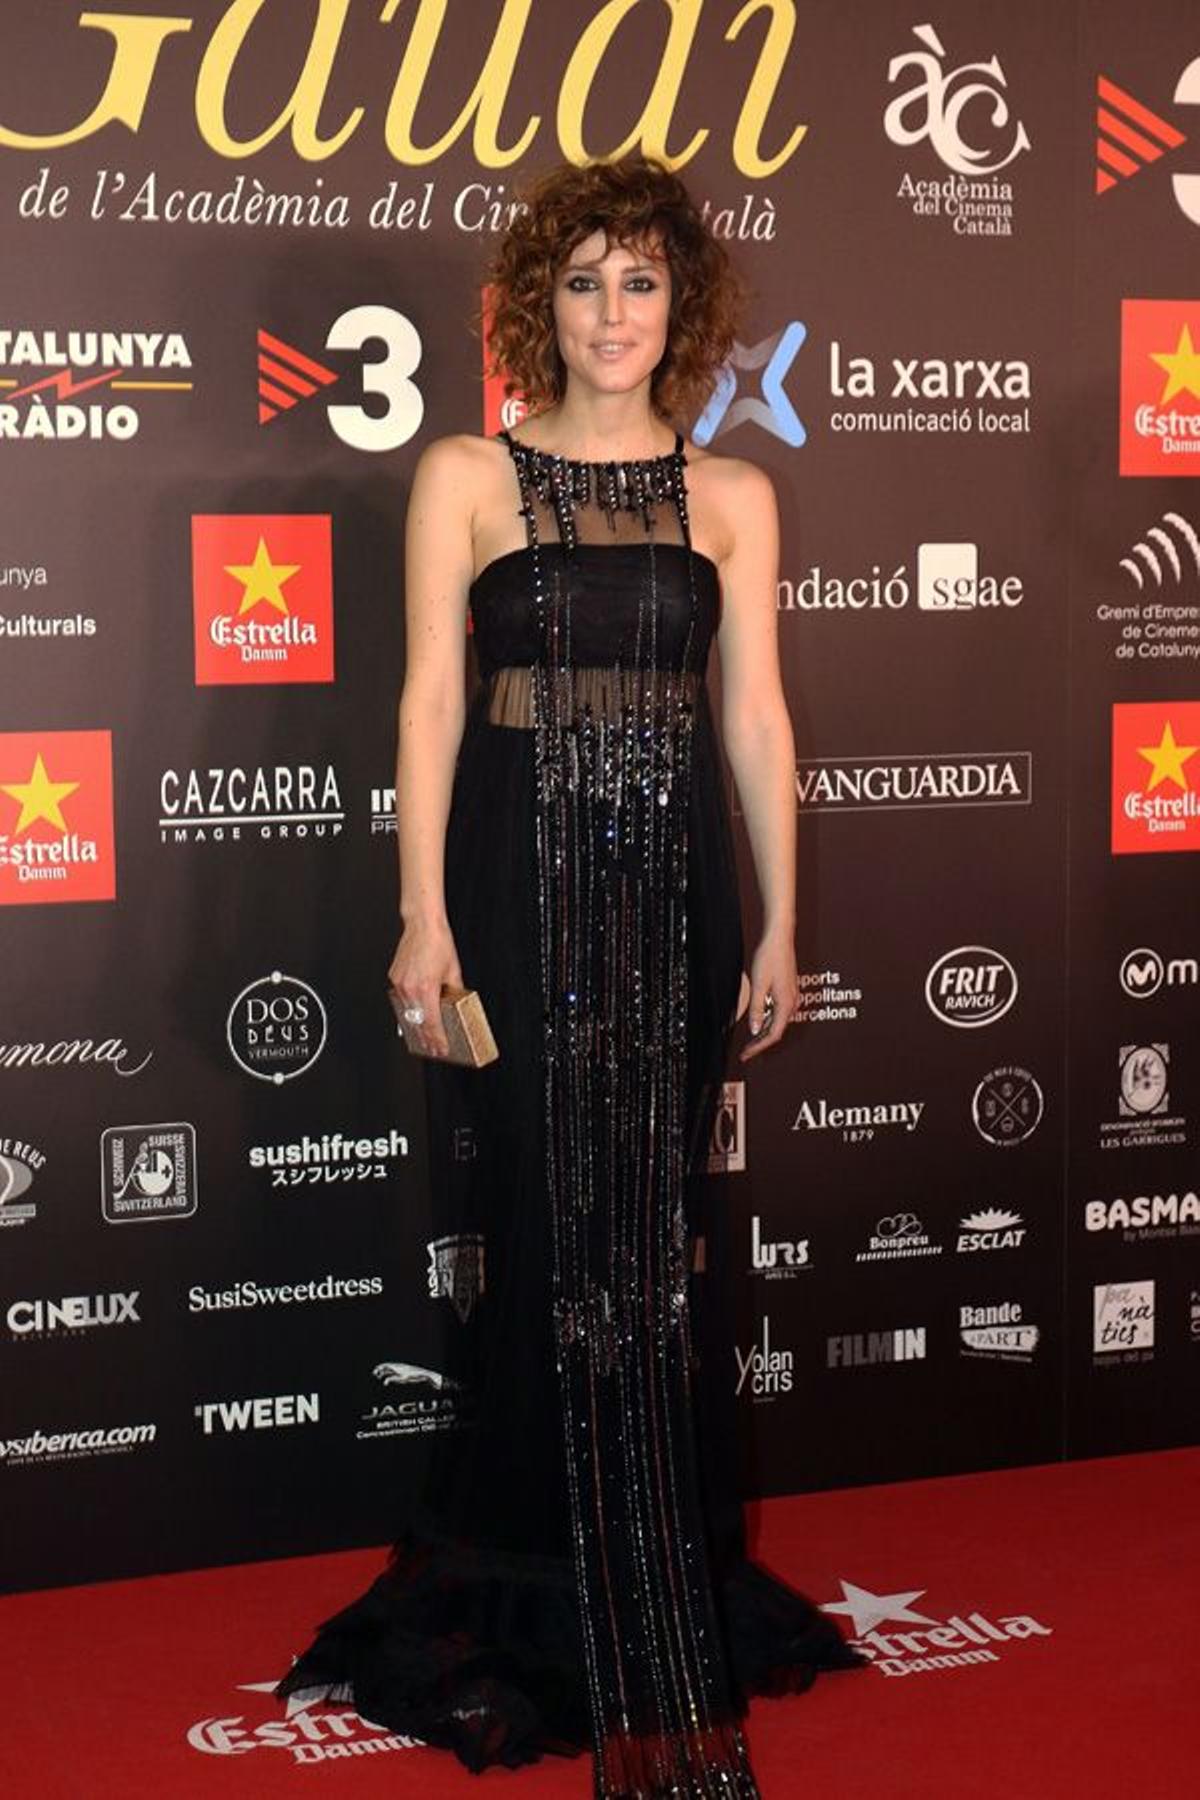 Premios Gaudí 2016: Natalia de Molina